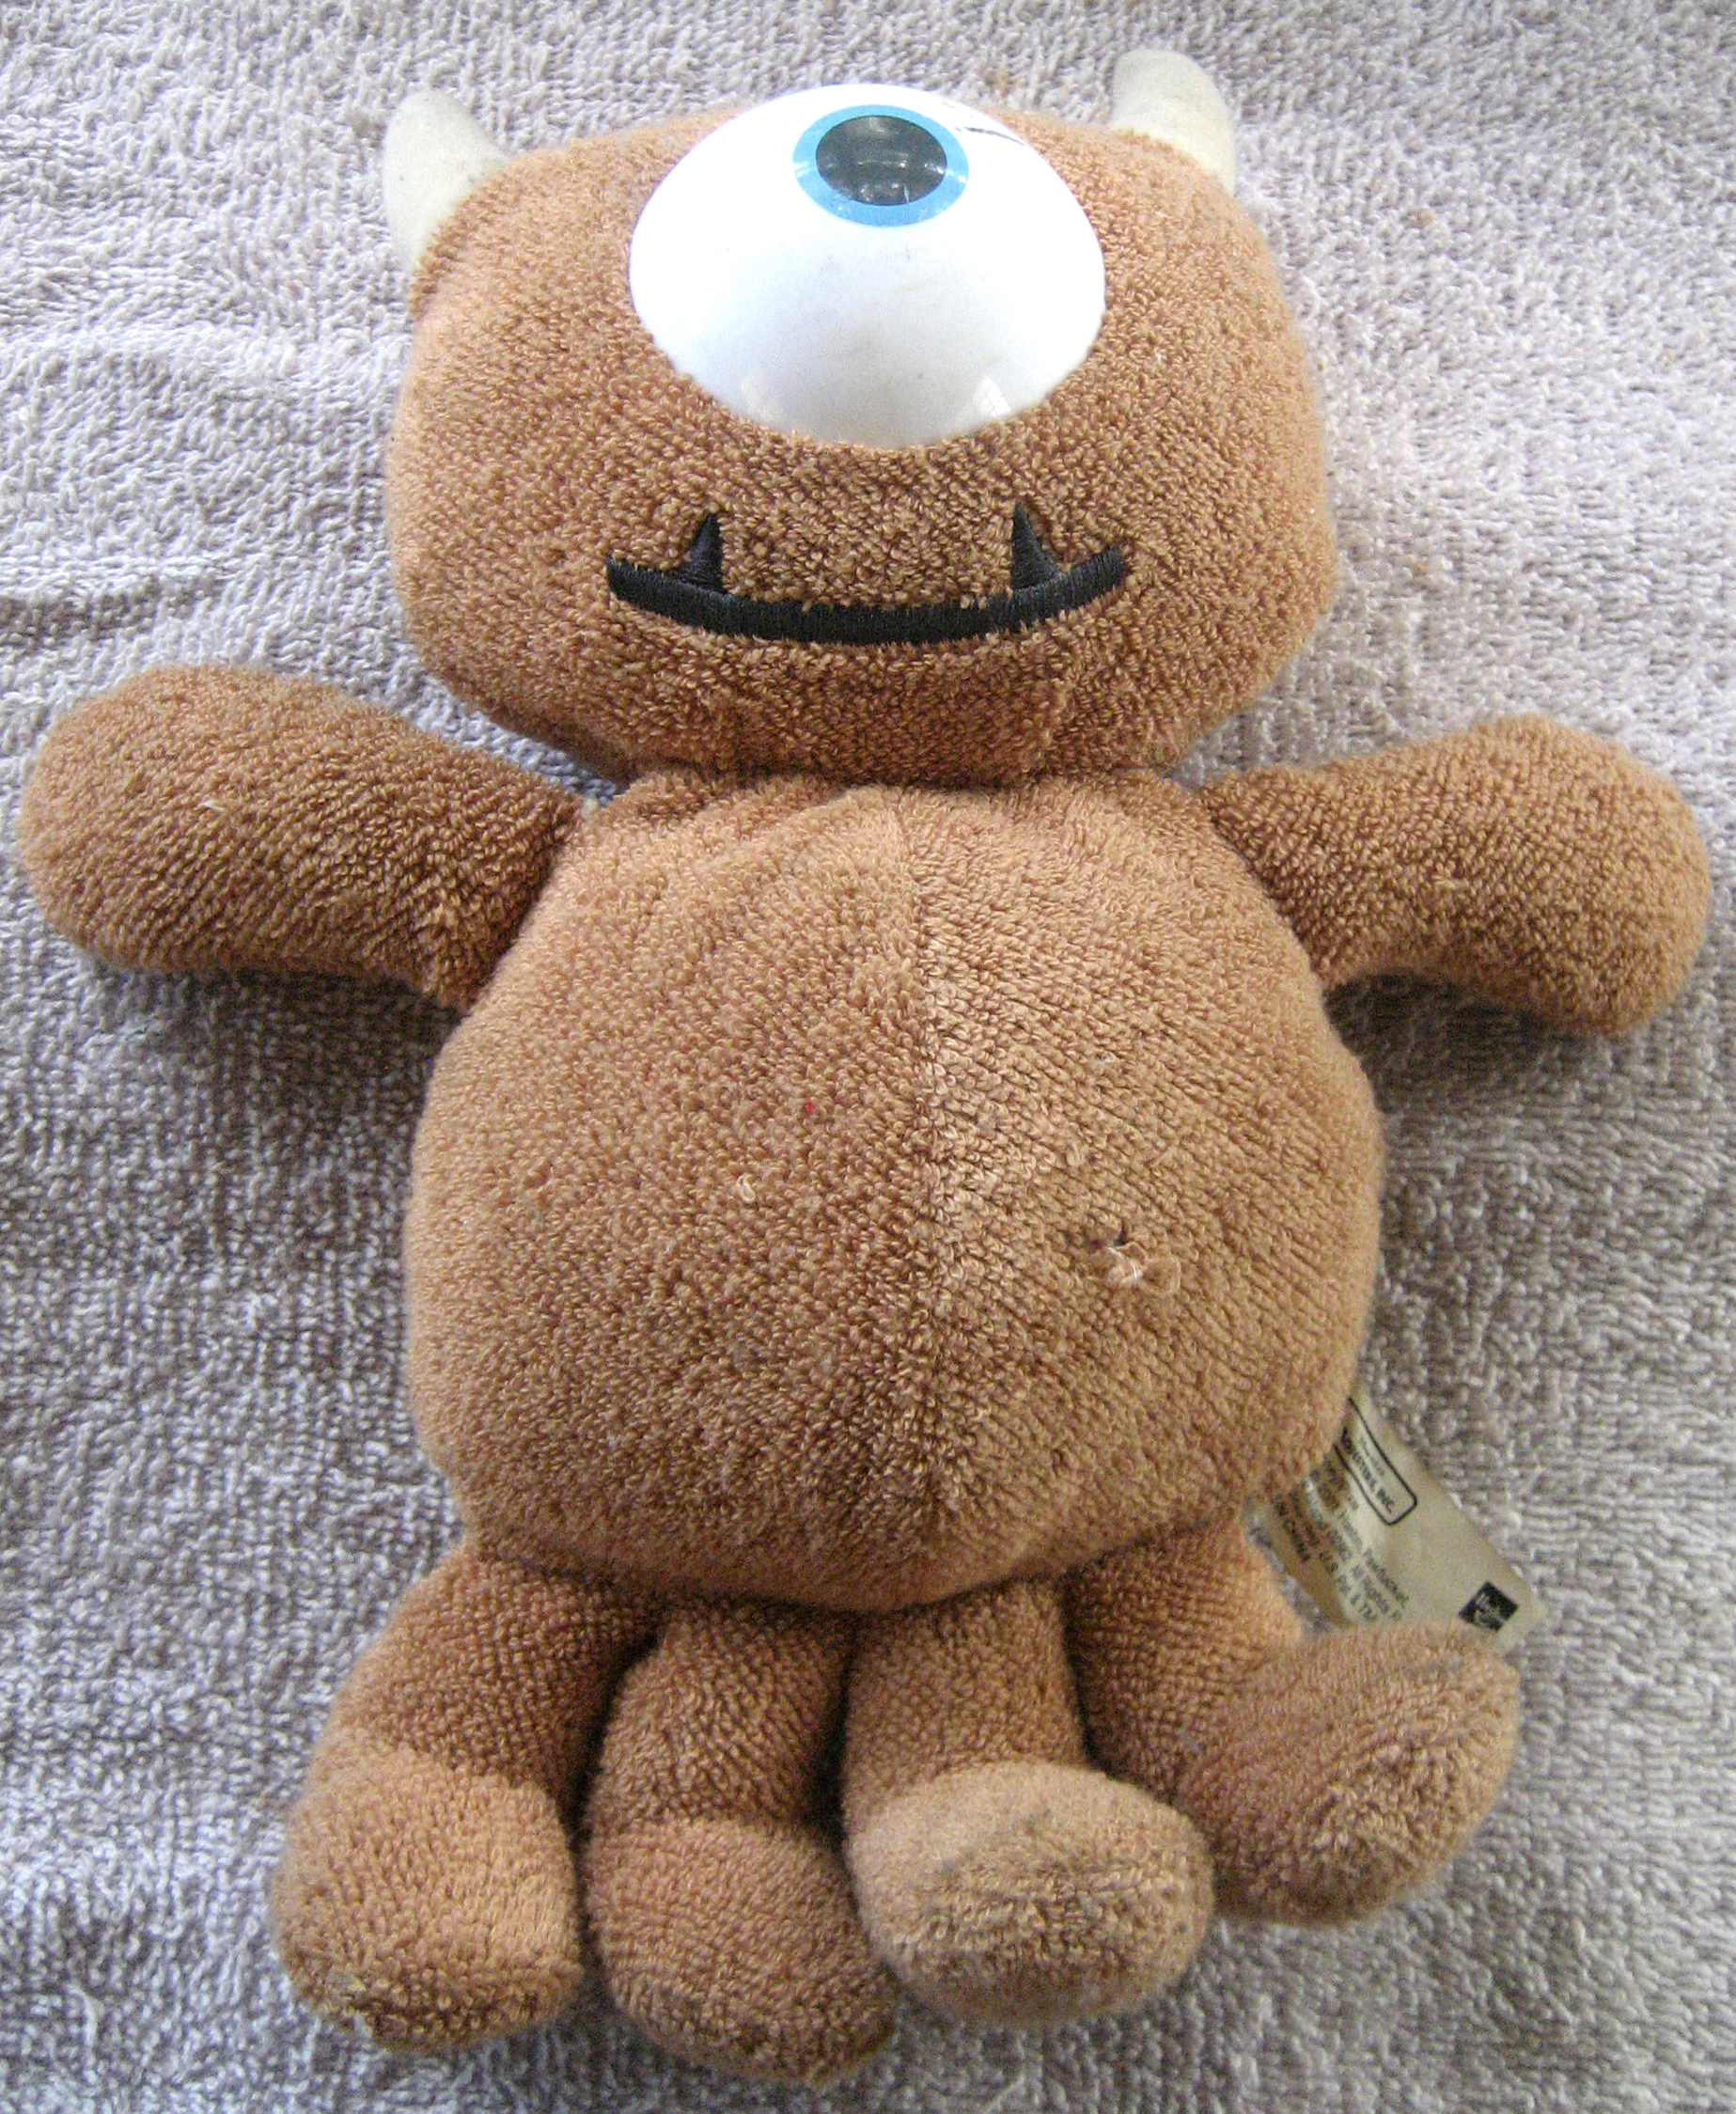 mike wazowski's teddy bear